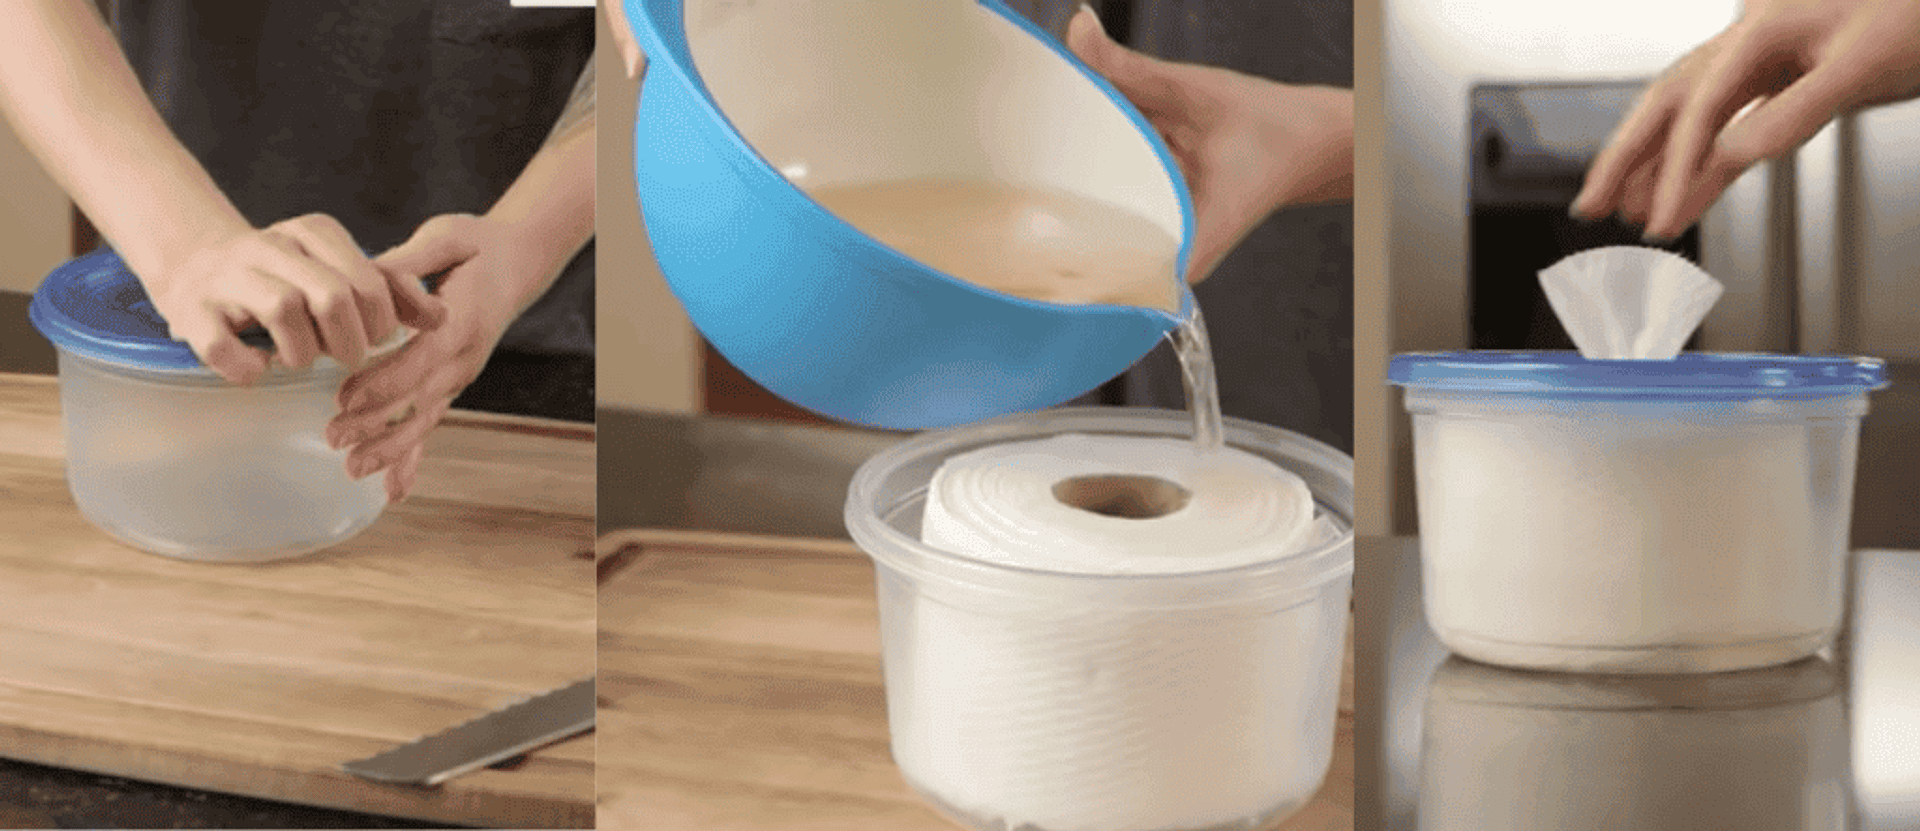 jak zrobić domowe chusteczki nawilżane dla dzieci